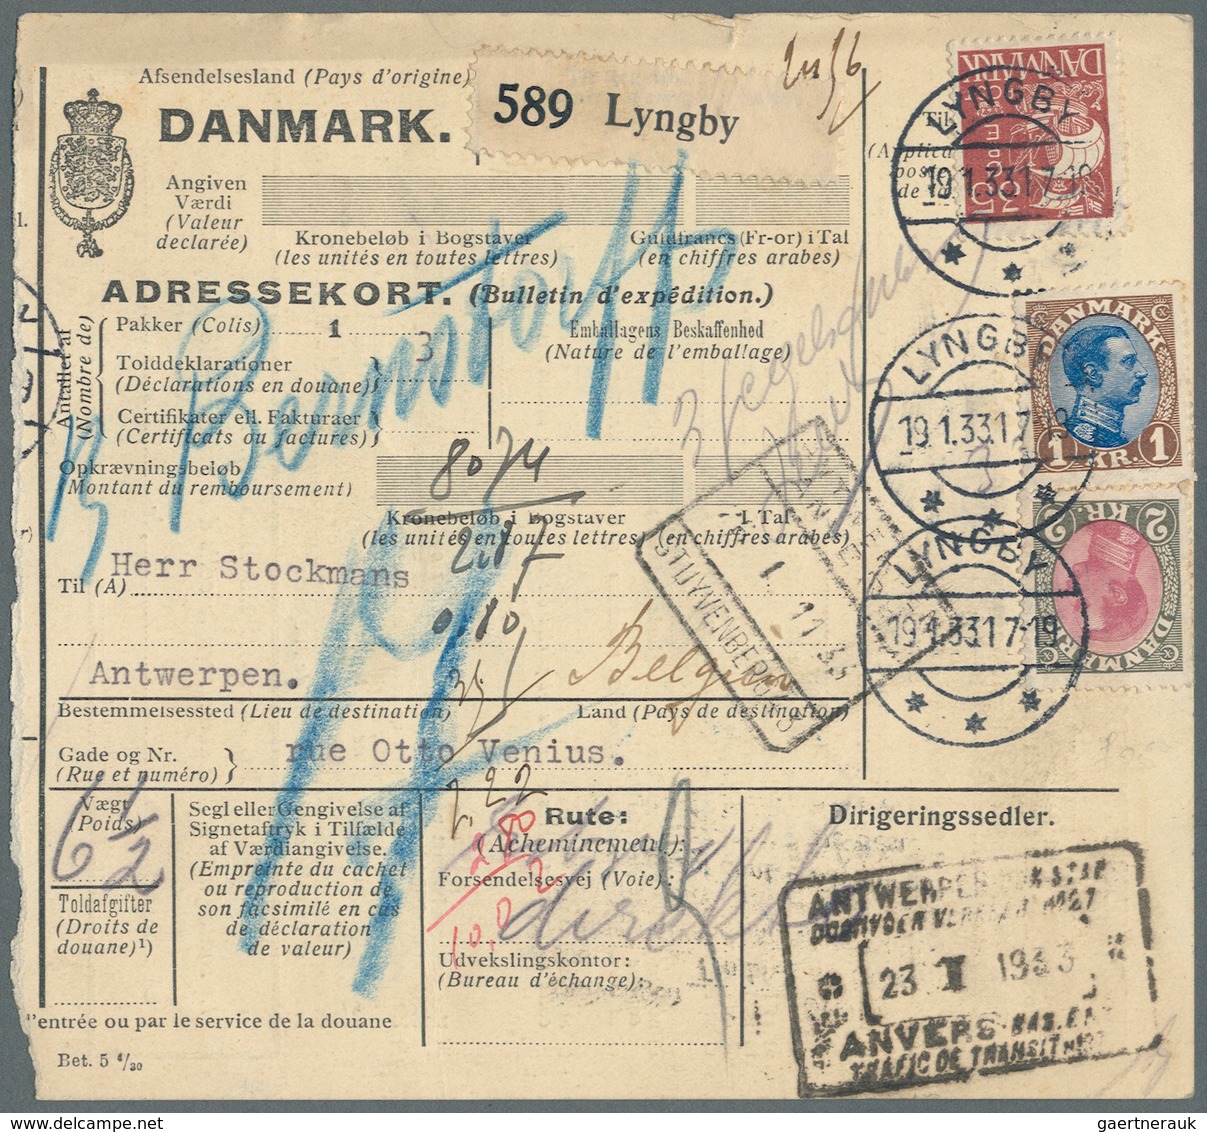 Dänemark: 1866-1945 (meist), interresanter Posten von über 250 Belegen mit besseren Stempeln, sowie